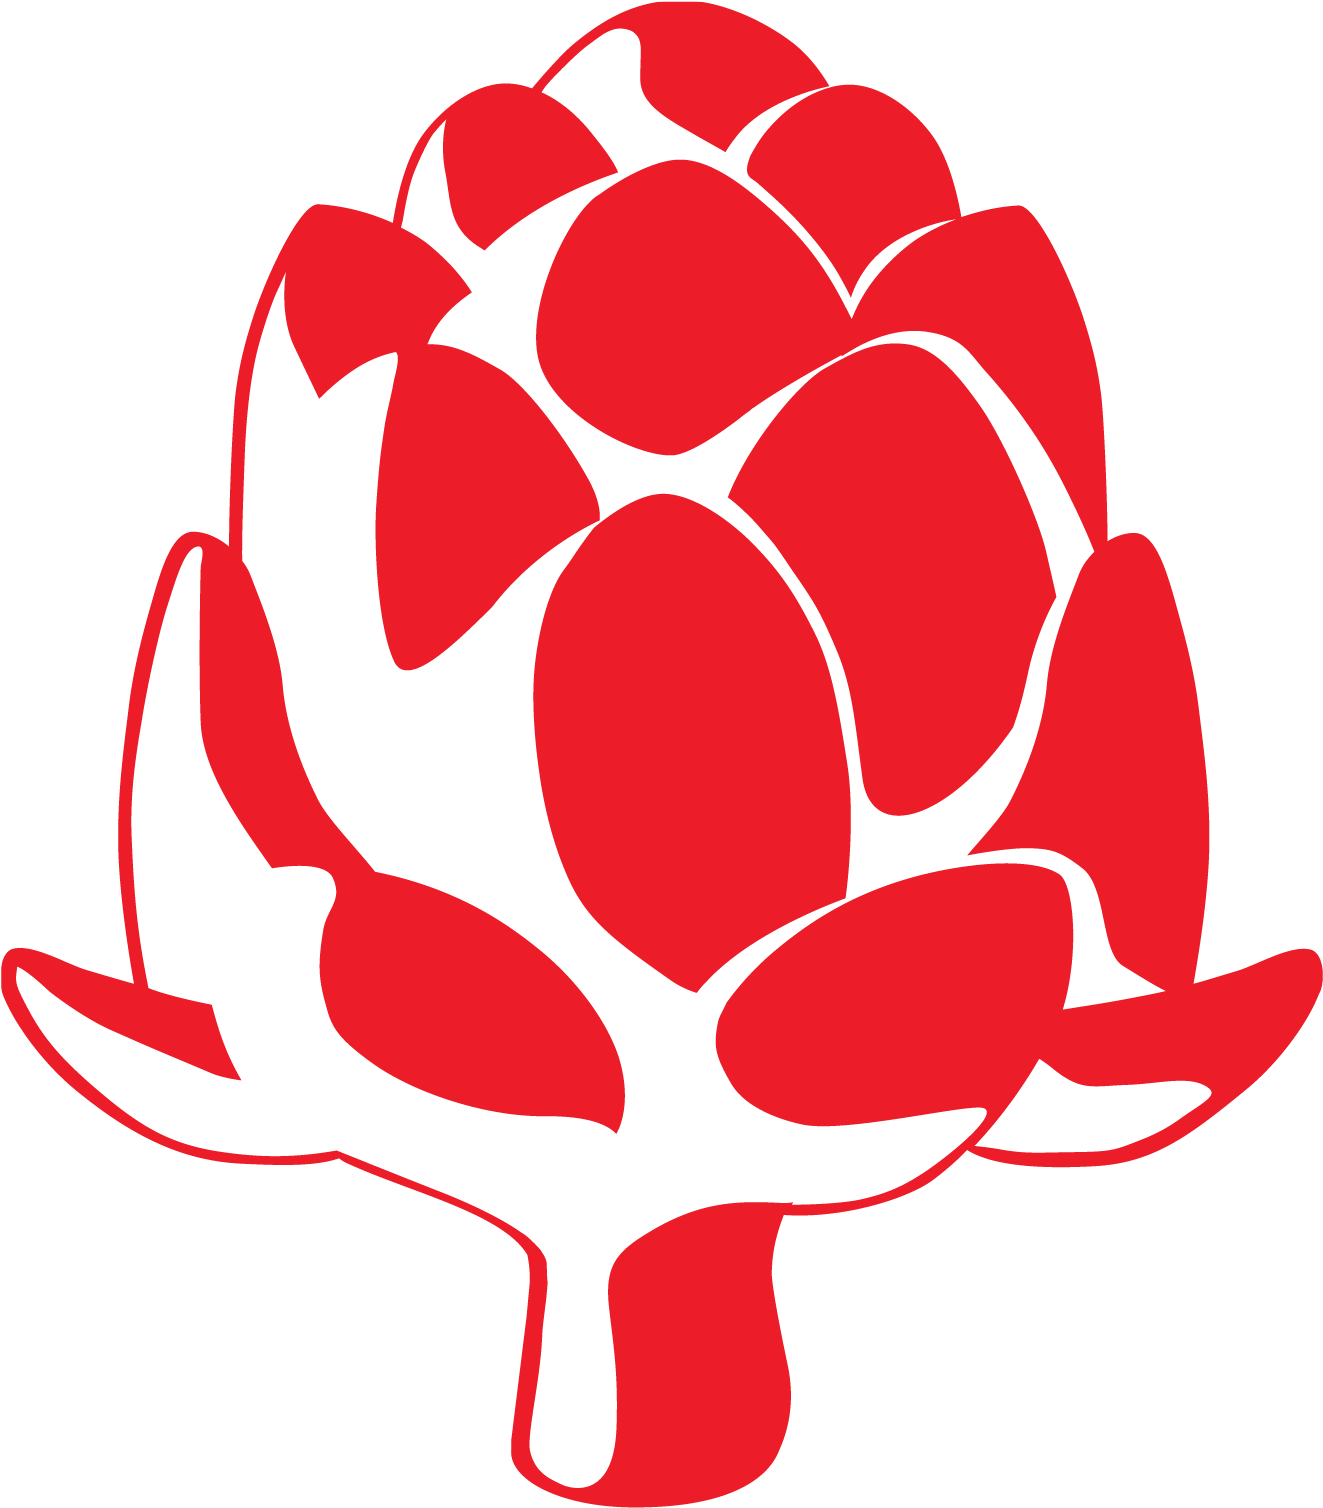 RedArtichoke Logo - Web Design and Branding for Small Business